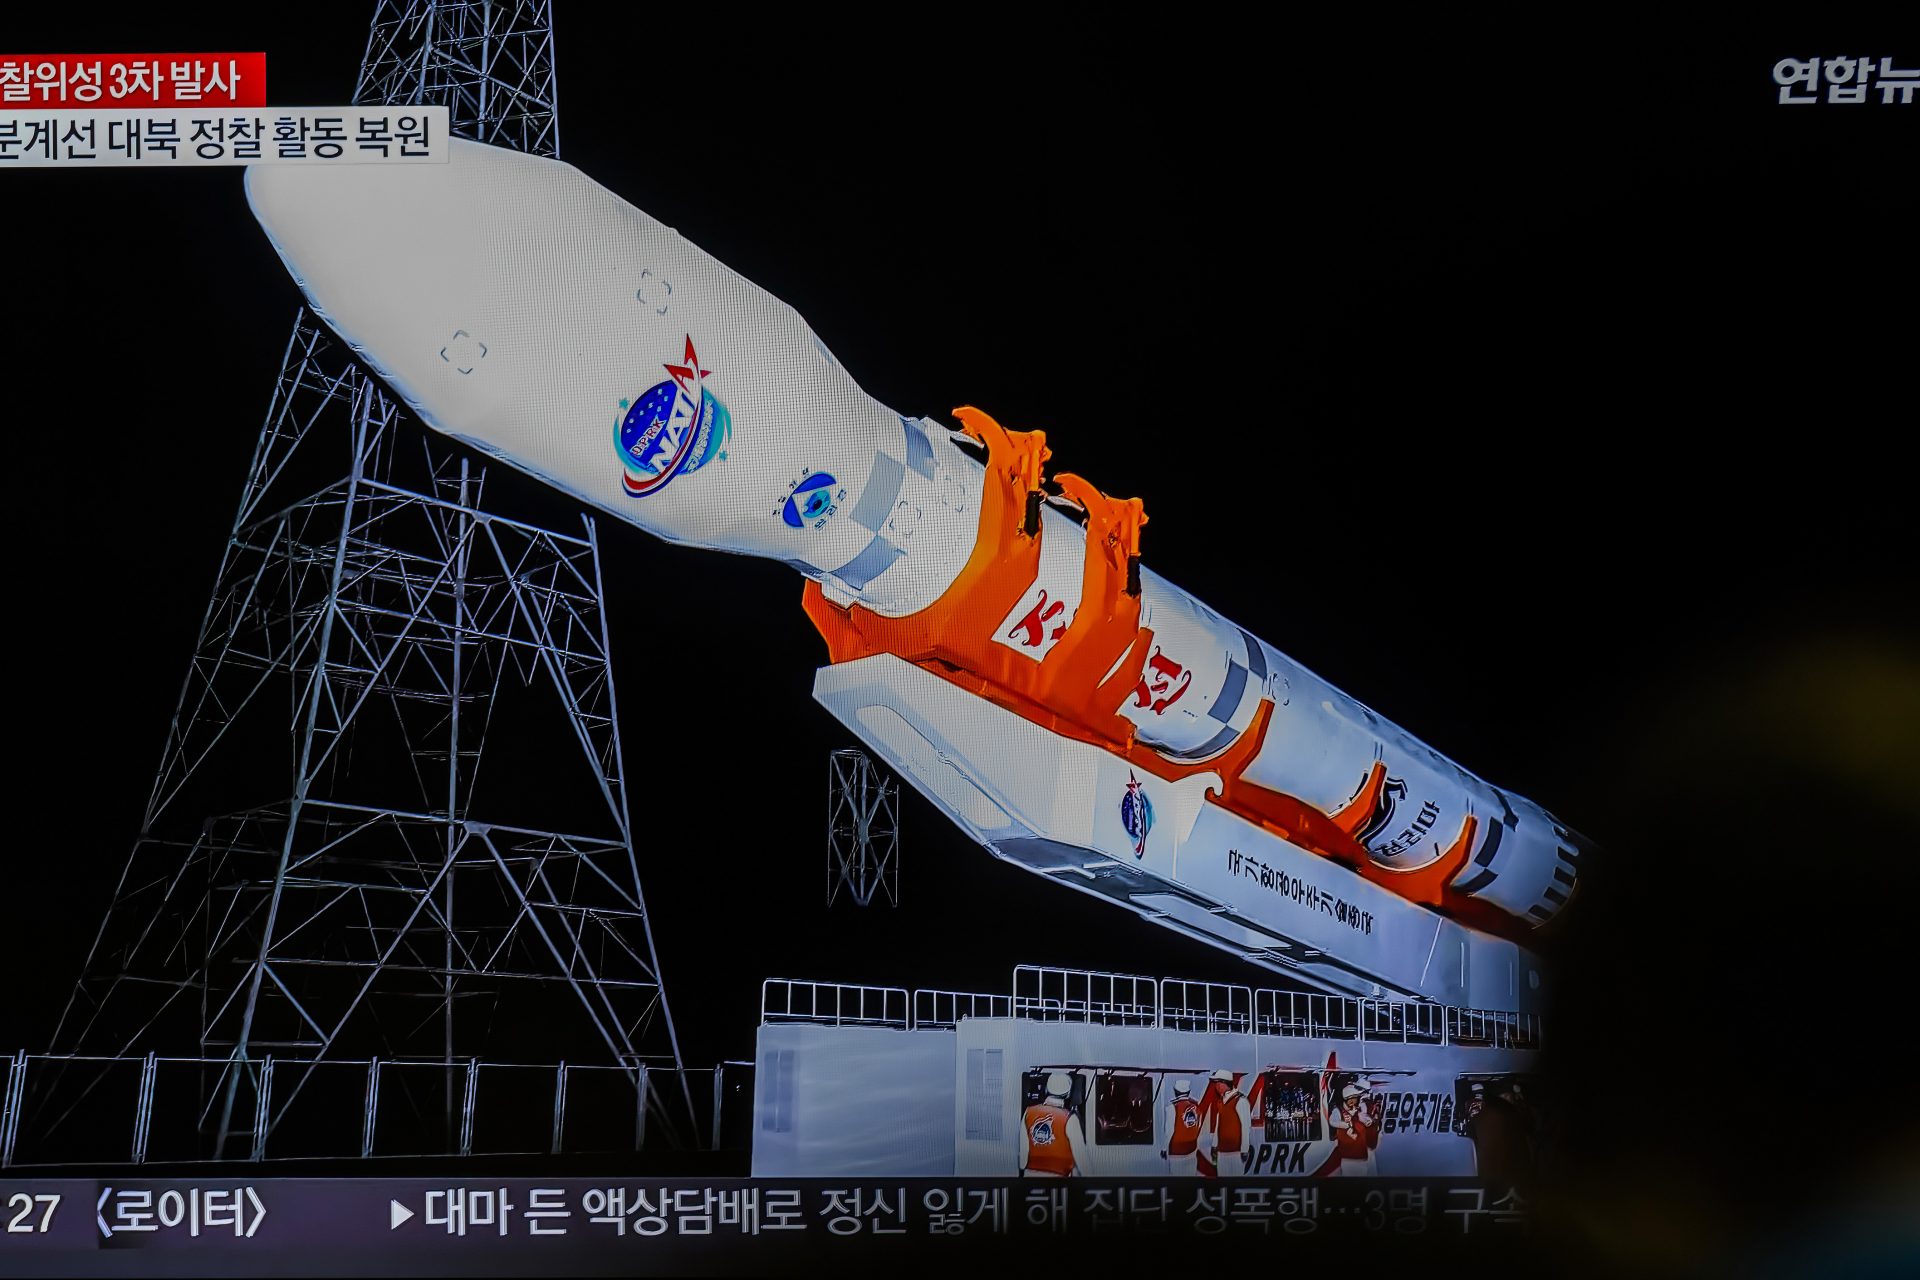 La Corée du Nord vient de lancer un nouveau satellite espion dans l'espace